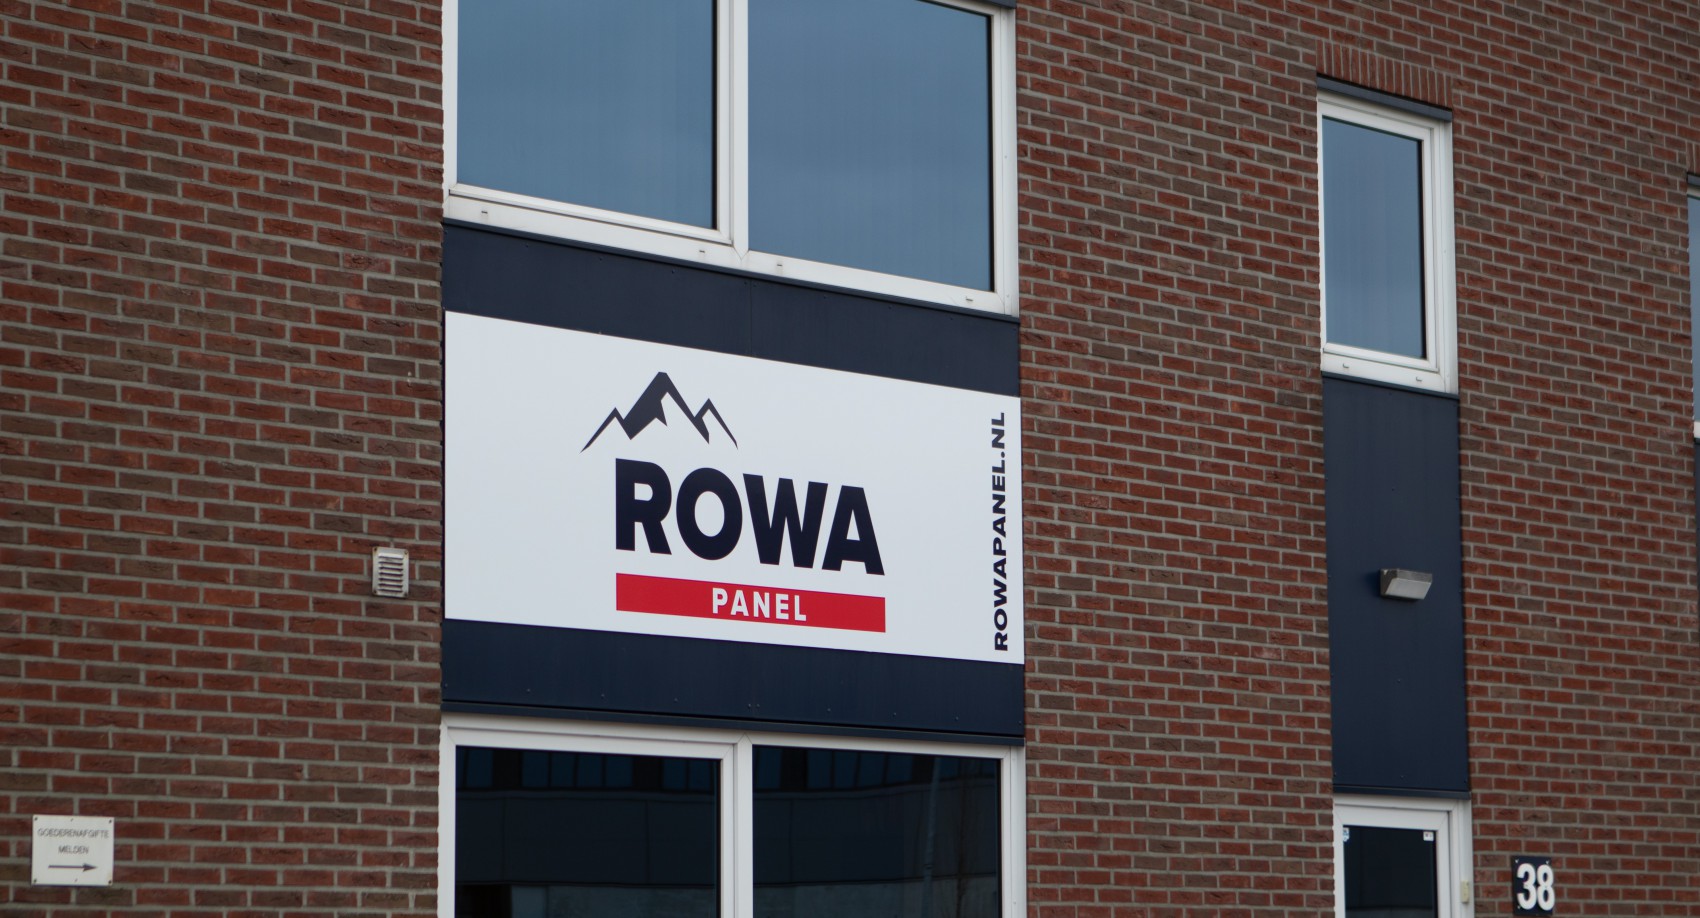 ROWA Panel is producent van EPS- en steenwolpanelen